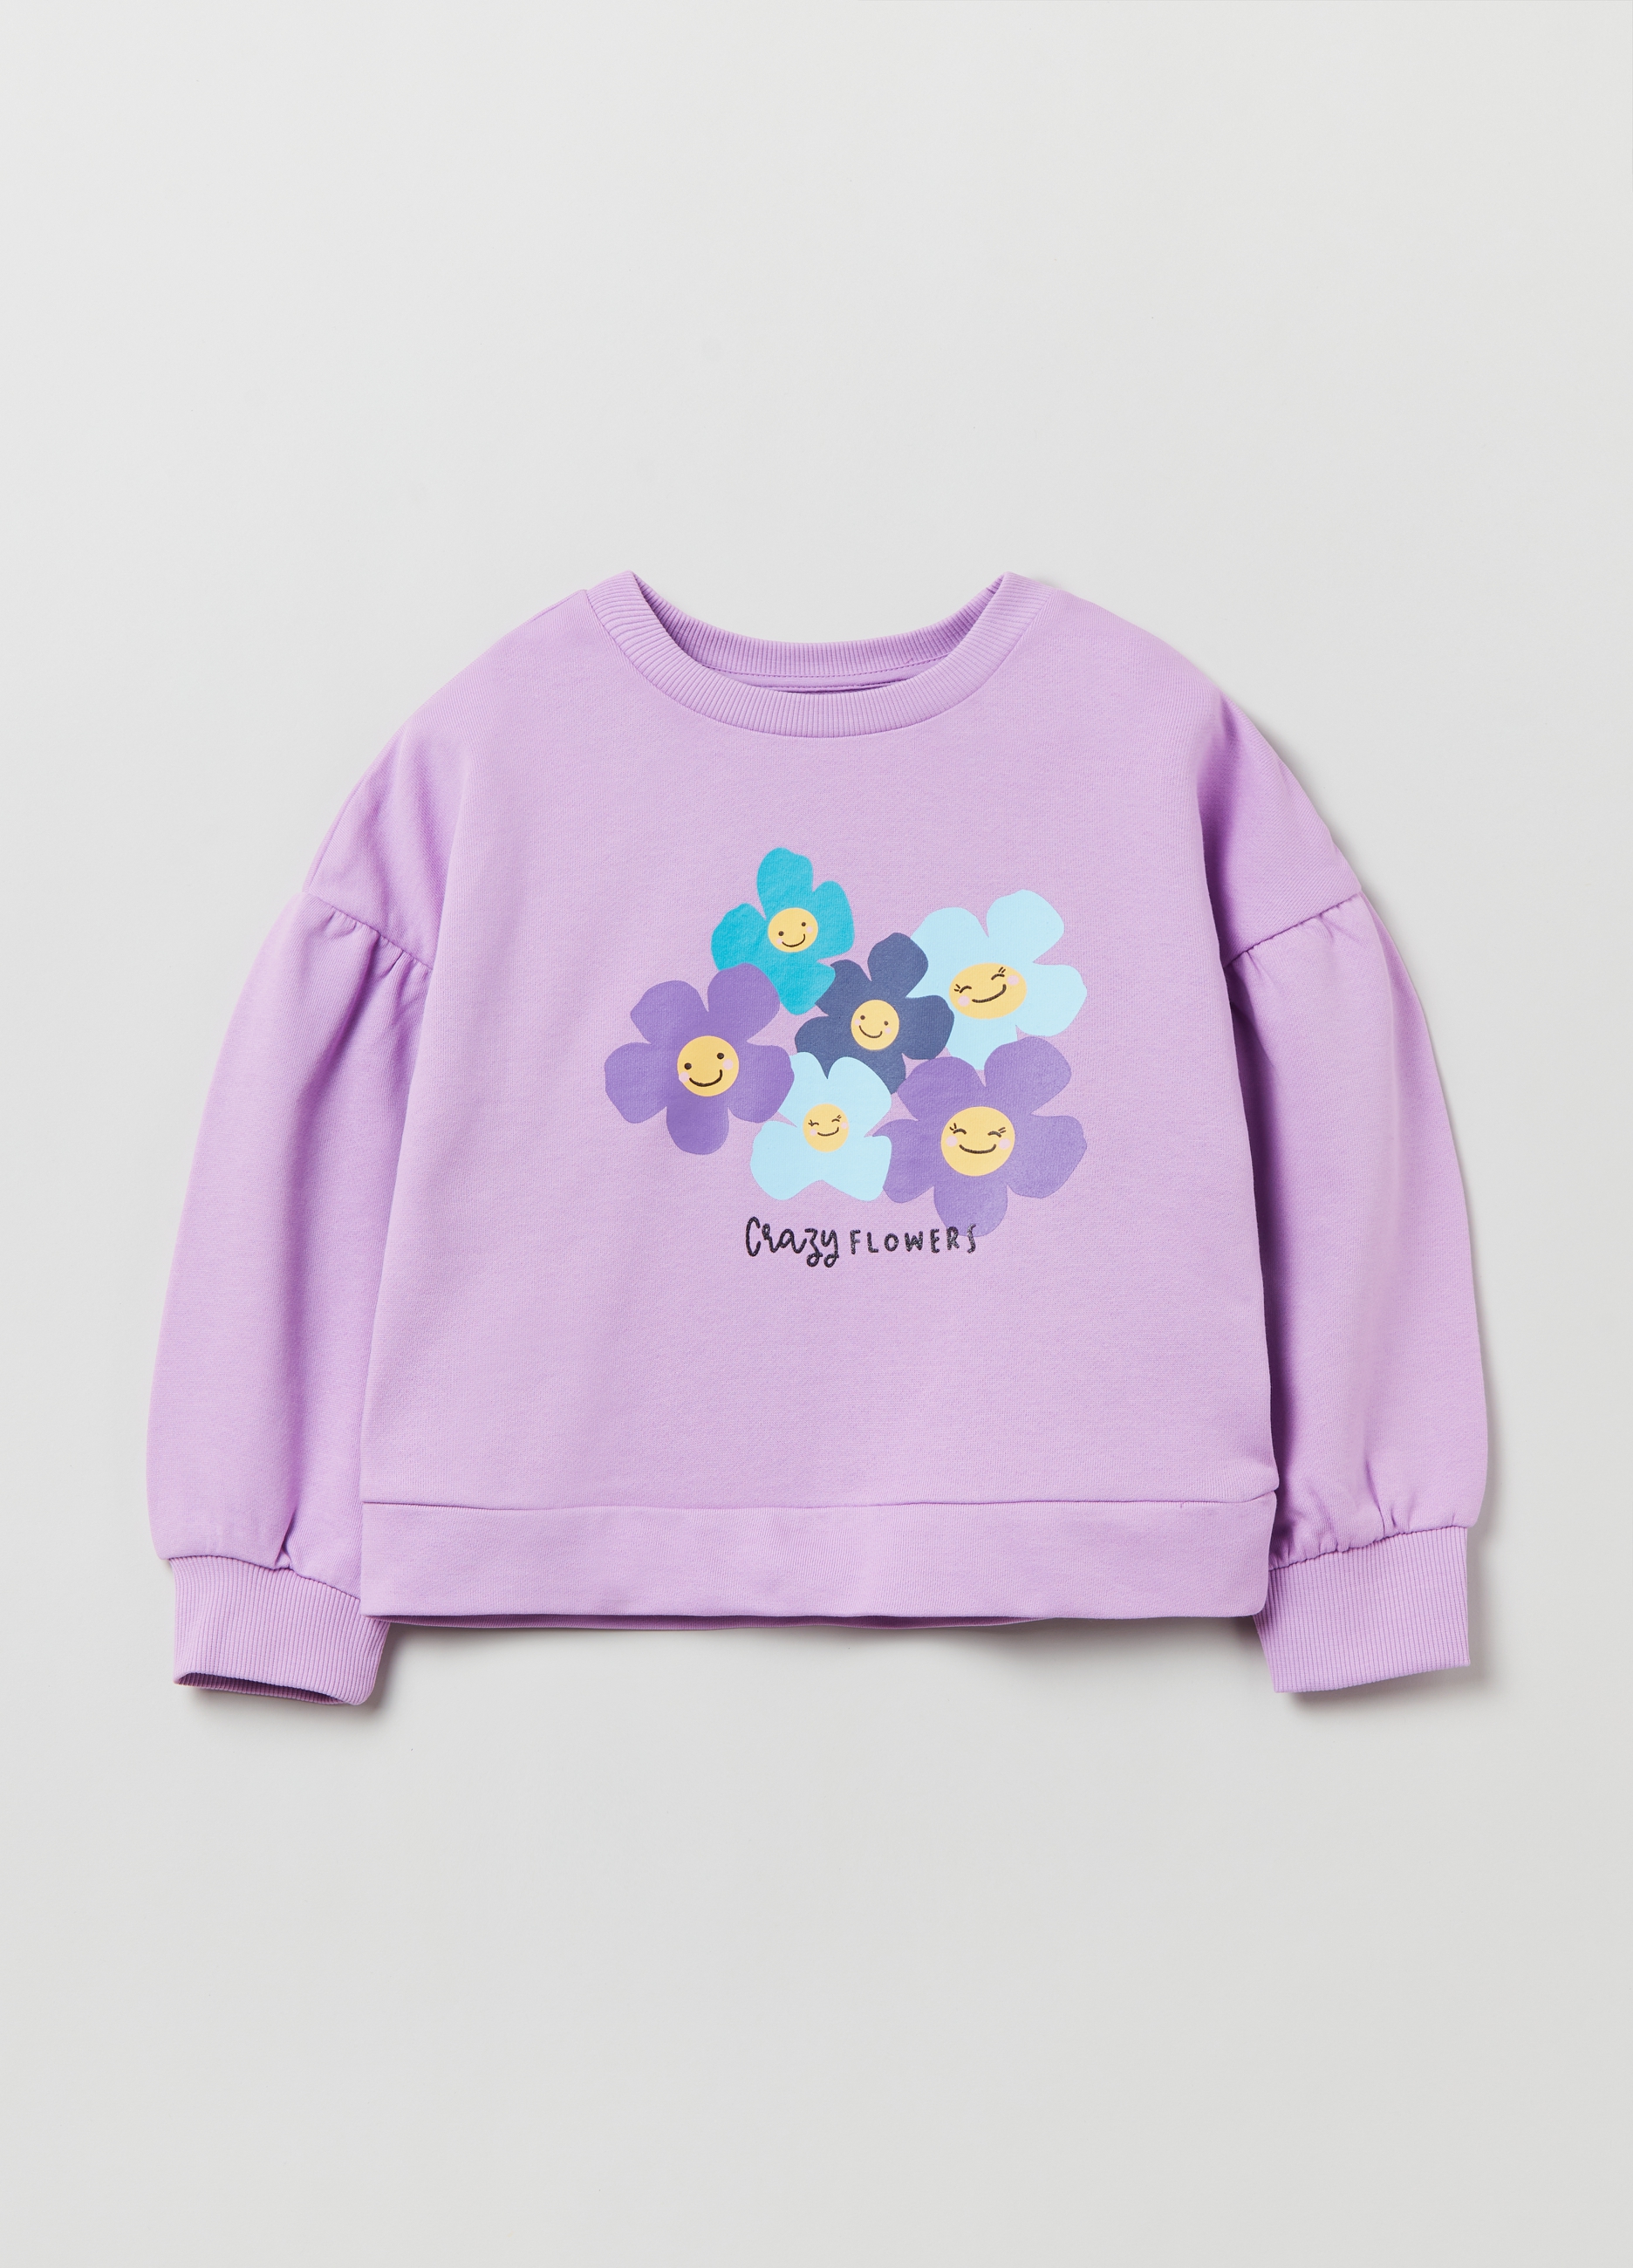 Фуфайка OVS для девочек, фиолетовая, 9-10 лет, 1893089 комплект для девочек фуфайка трикотажная футболка брюки текстильные